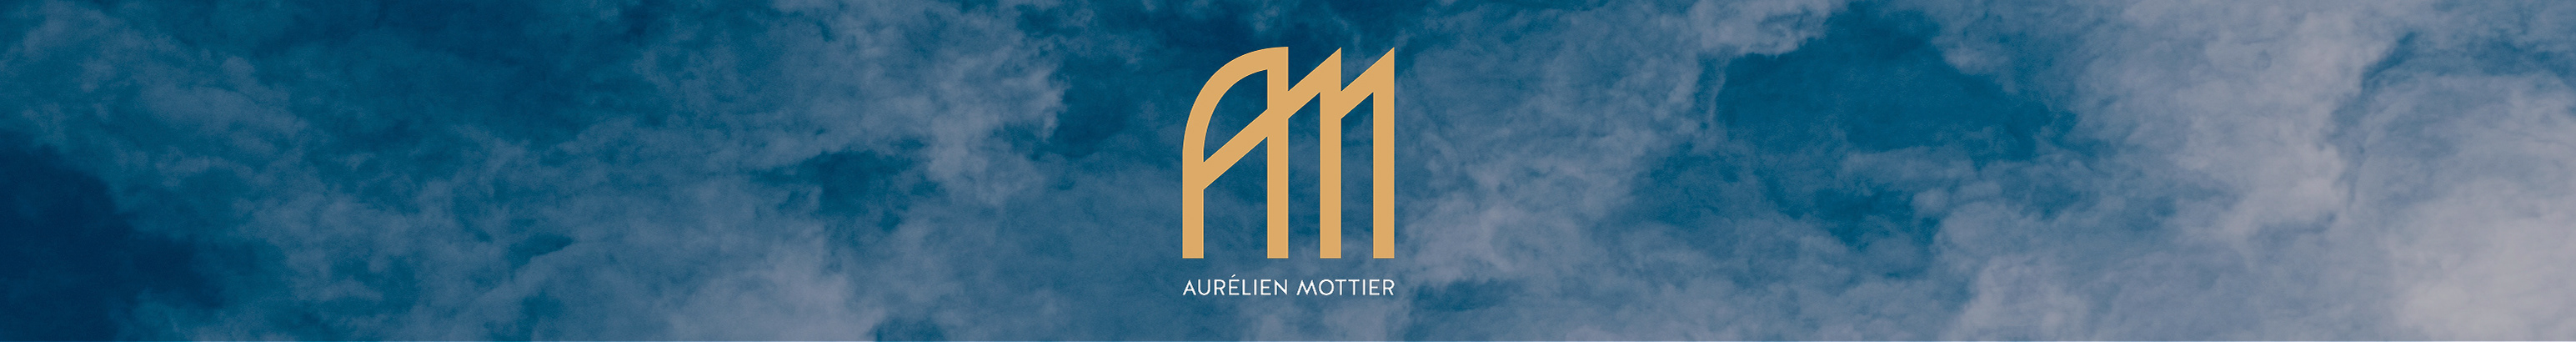 Aurélien Mottier's profile banner